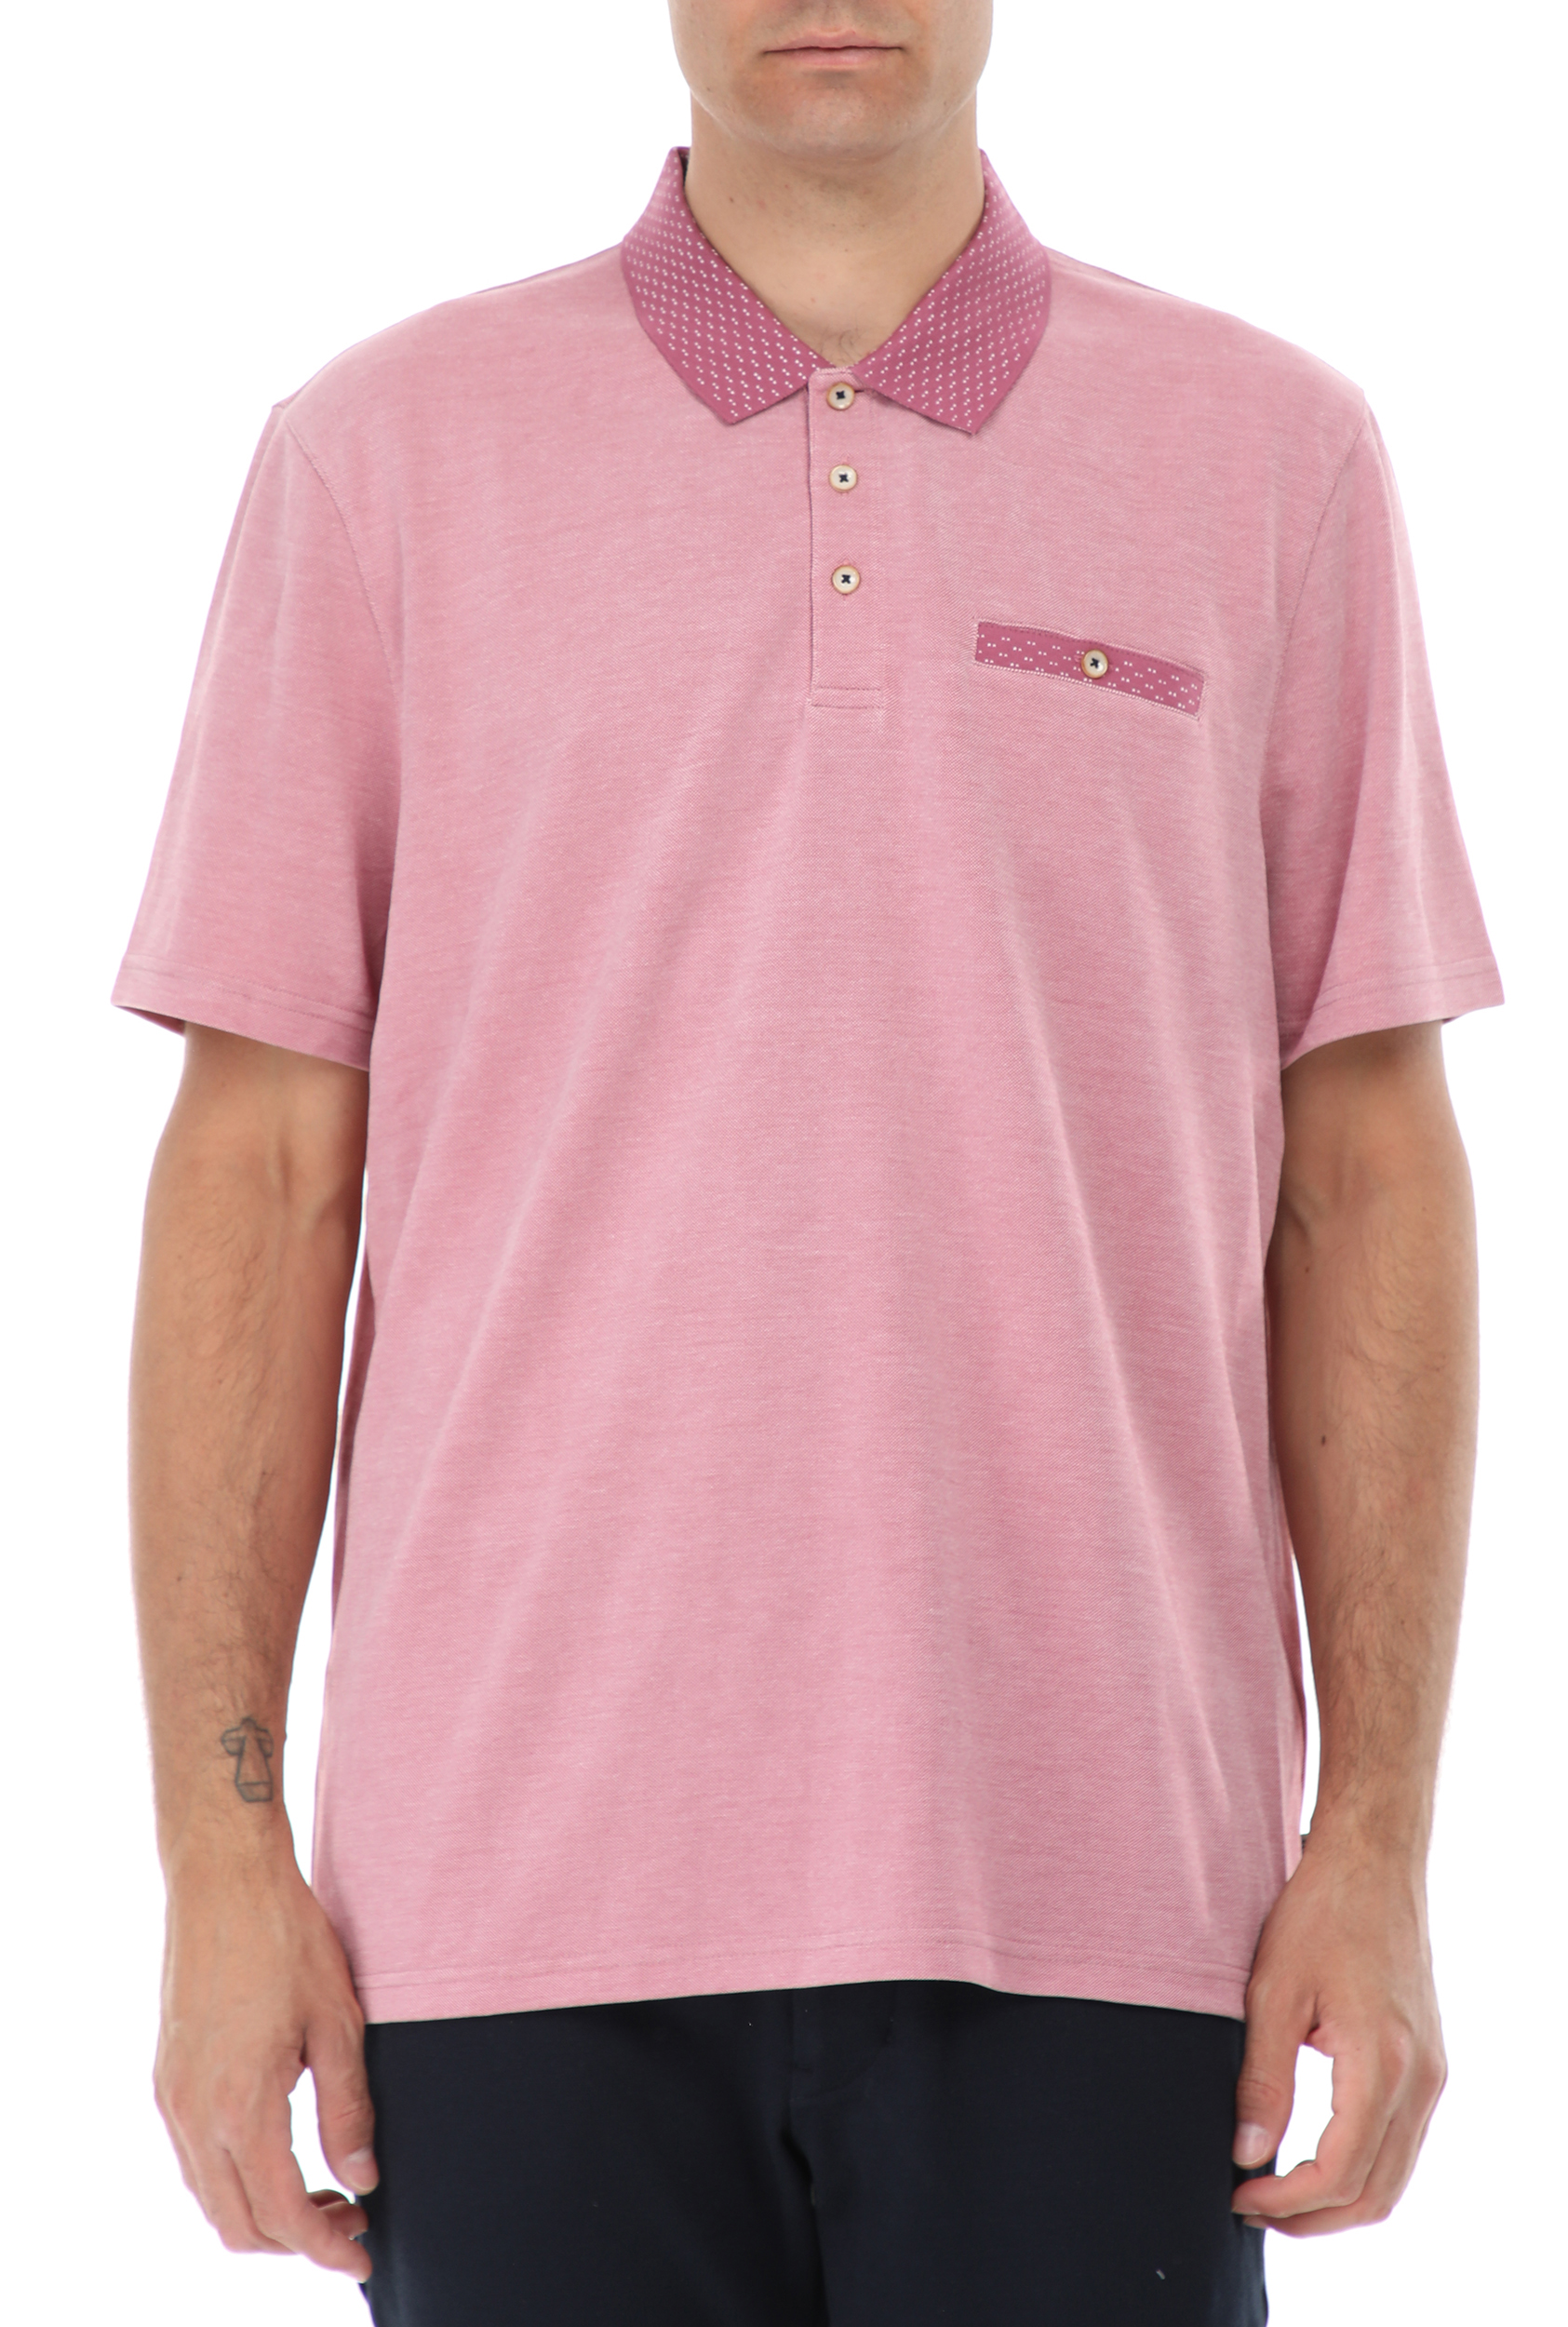 Ανδρικά/Ρούχα/Μπλούζες/Πόλο TED BAKER - Ανδρική polo μπλούζα TED BAKER CAROSEL ροζ